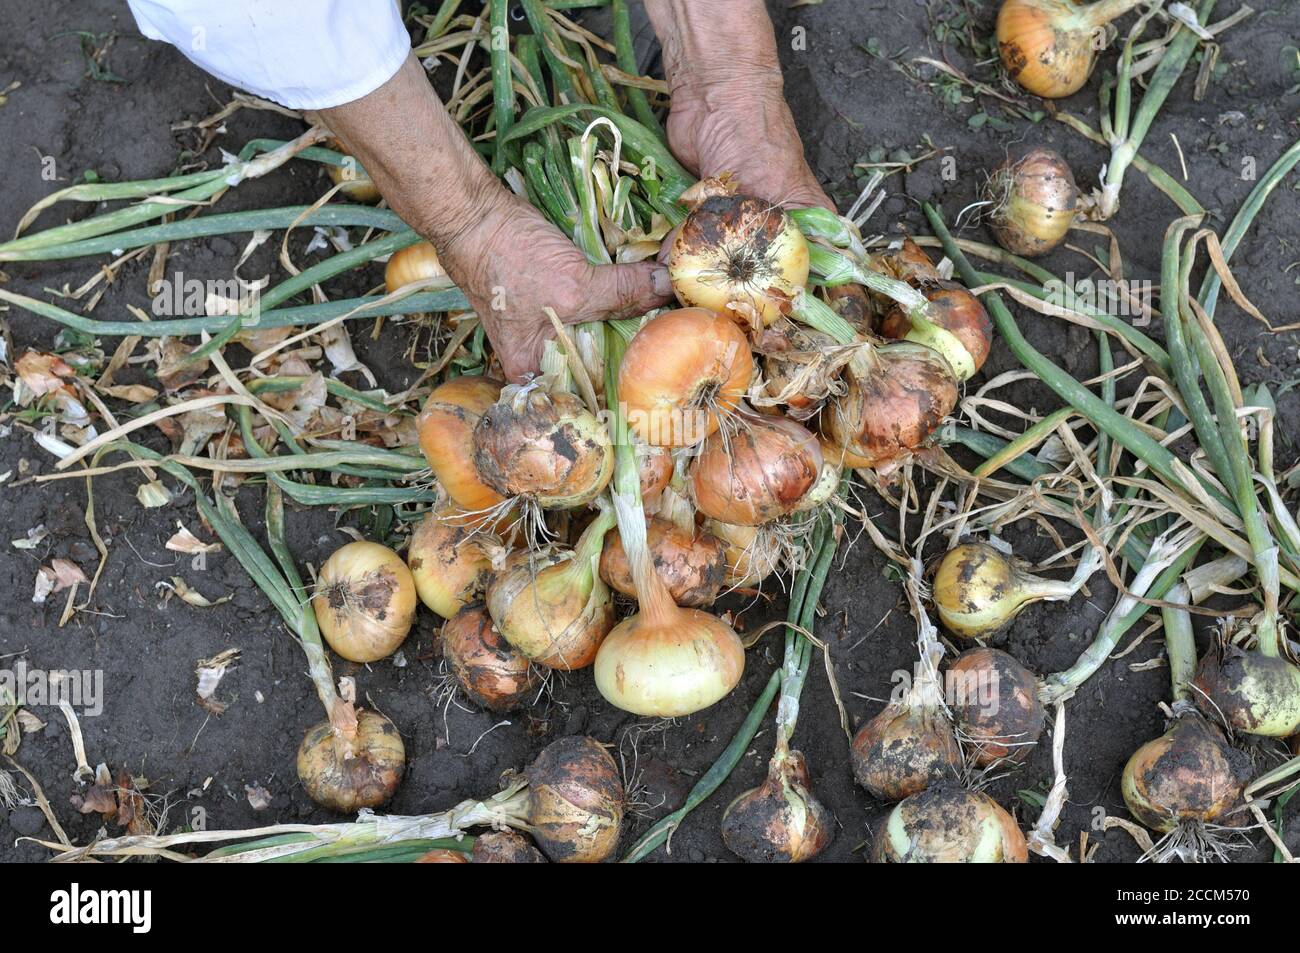 Giardiniere con le mani in mano la raccolta organica maturi cipolla nell'orto Foto Stock